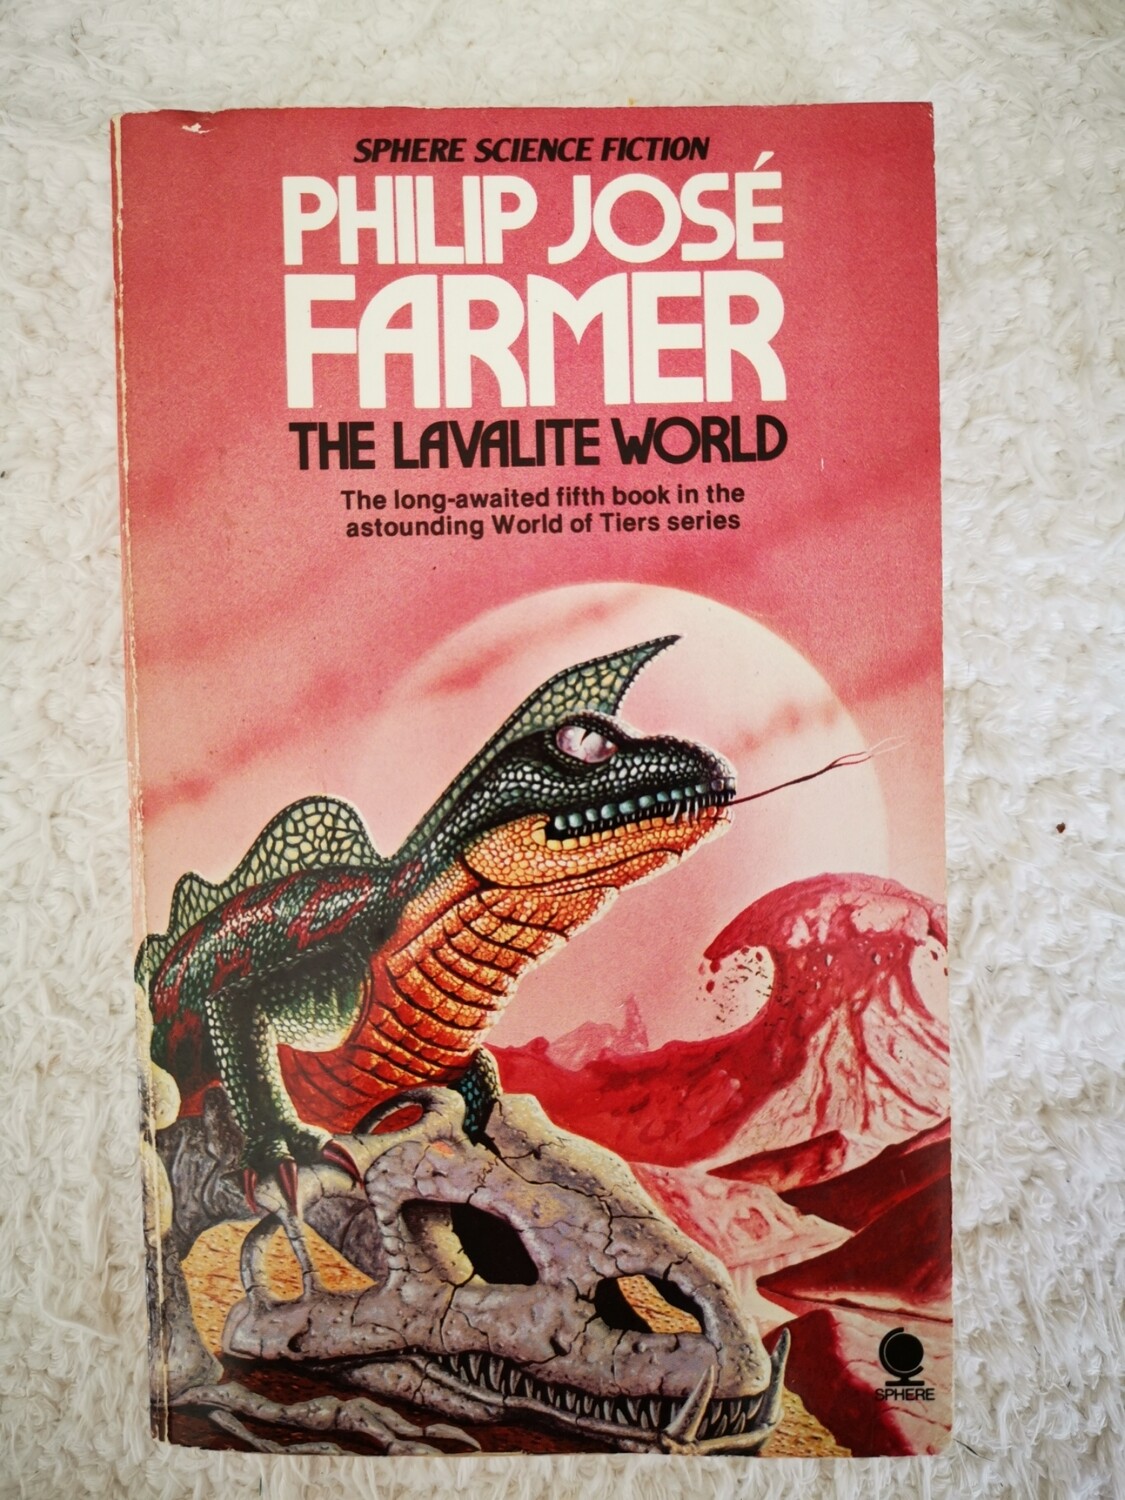 The Lavalite world, Philip Jose Farmer